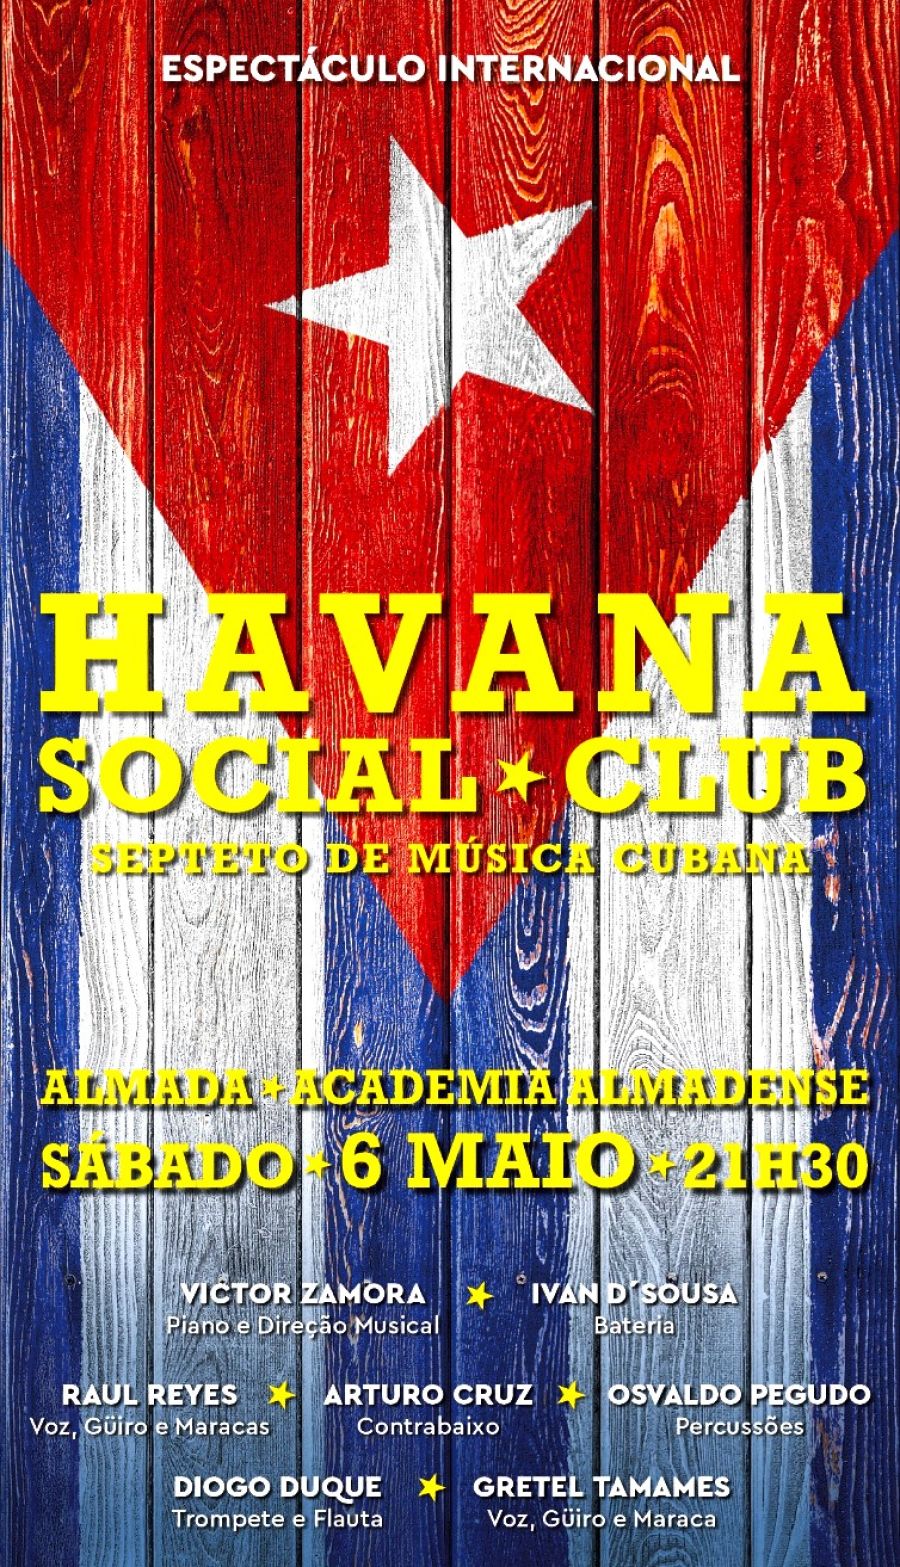 Havana Social Club - Septeto de Música Cubana